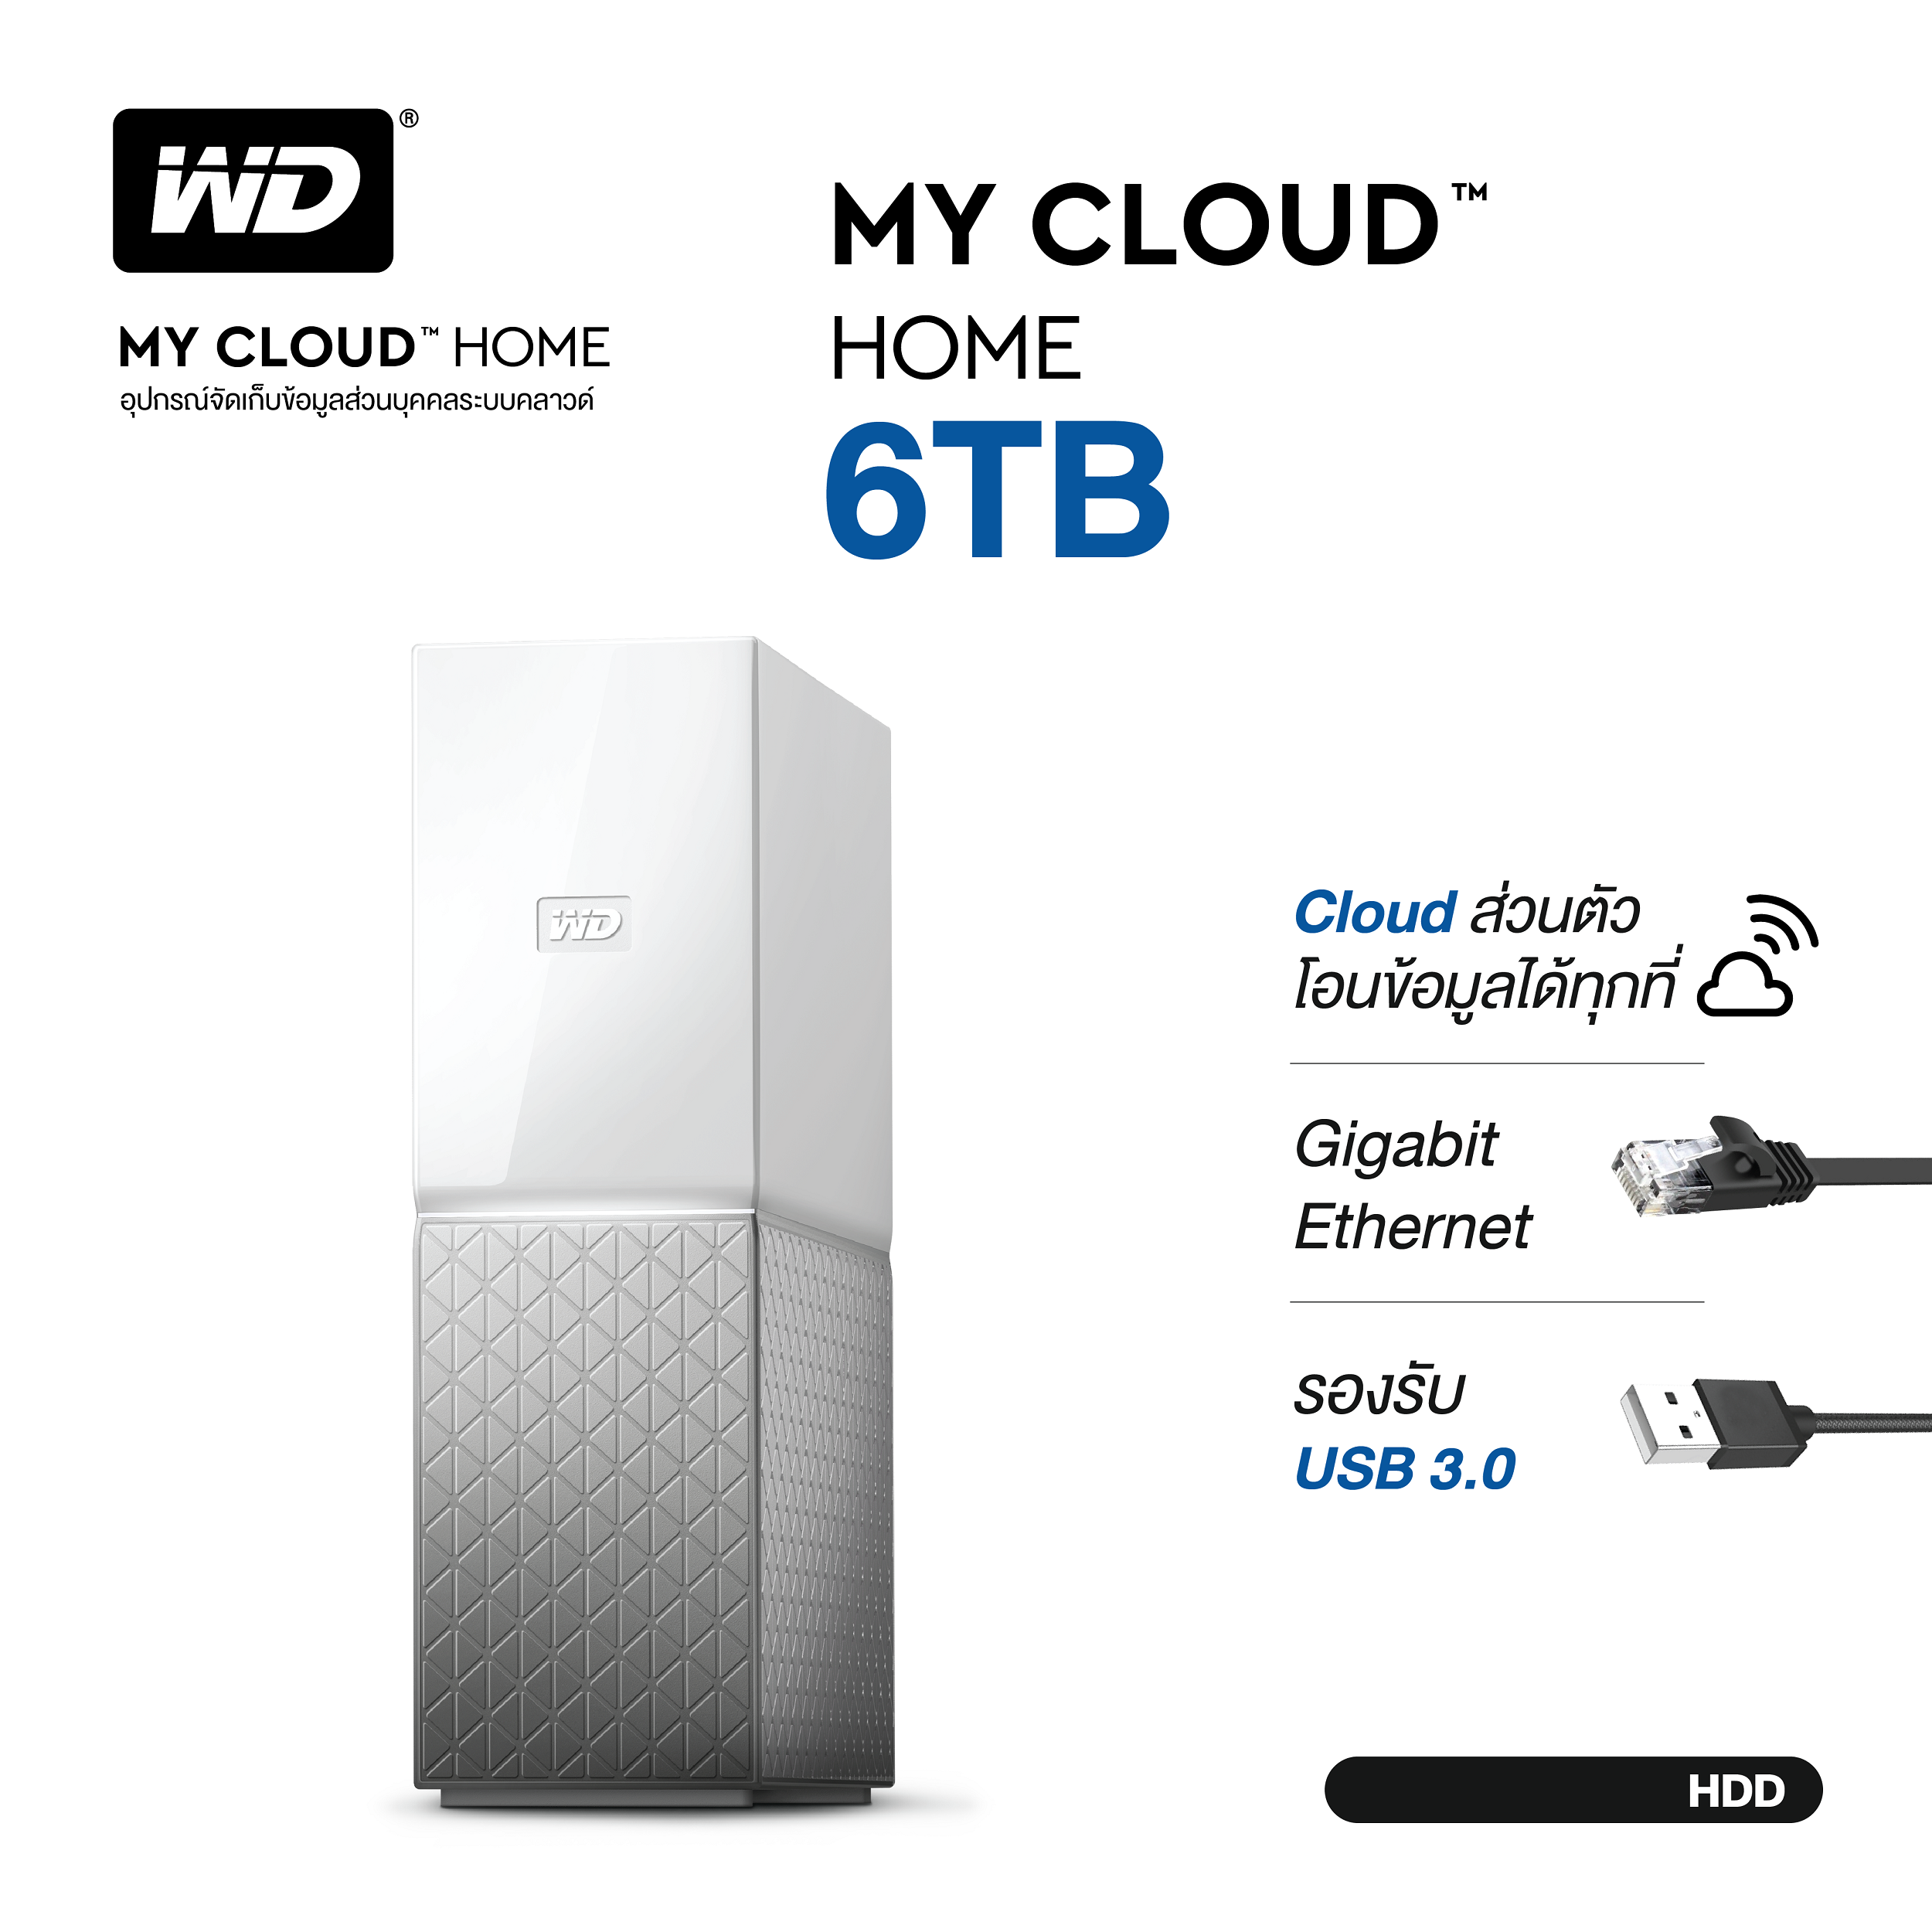 WD My Cloud Home 6TB, White, Gigabit Ethernet, USB 3.0, Cloud HDD 3.5  ( WDBVXC0060HWT-SESN ) ( ฮาร์ดดิสพกพา Internal Harddisk Harddrive )